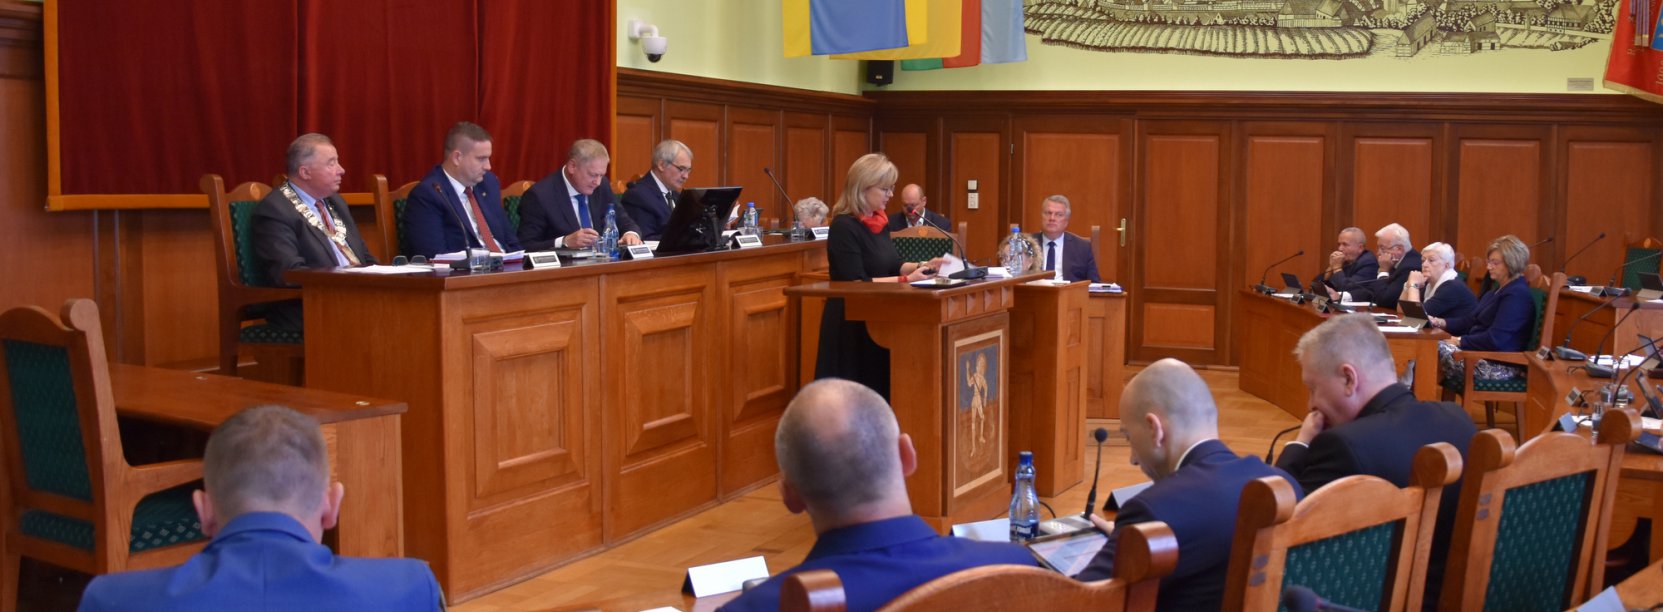 Sala Rycerska w trakcie obrad Rady Miejskiej Dzierżoniowa 